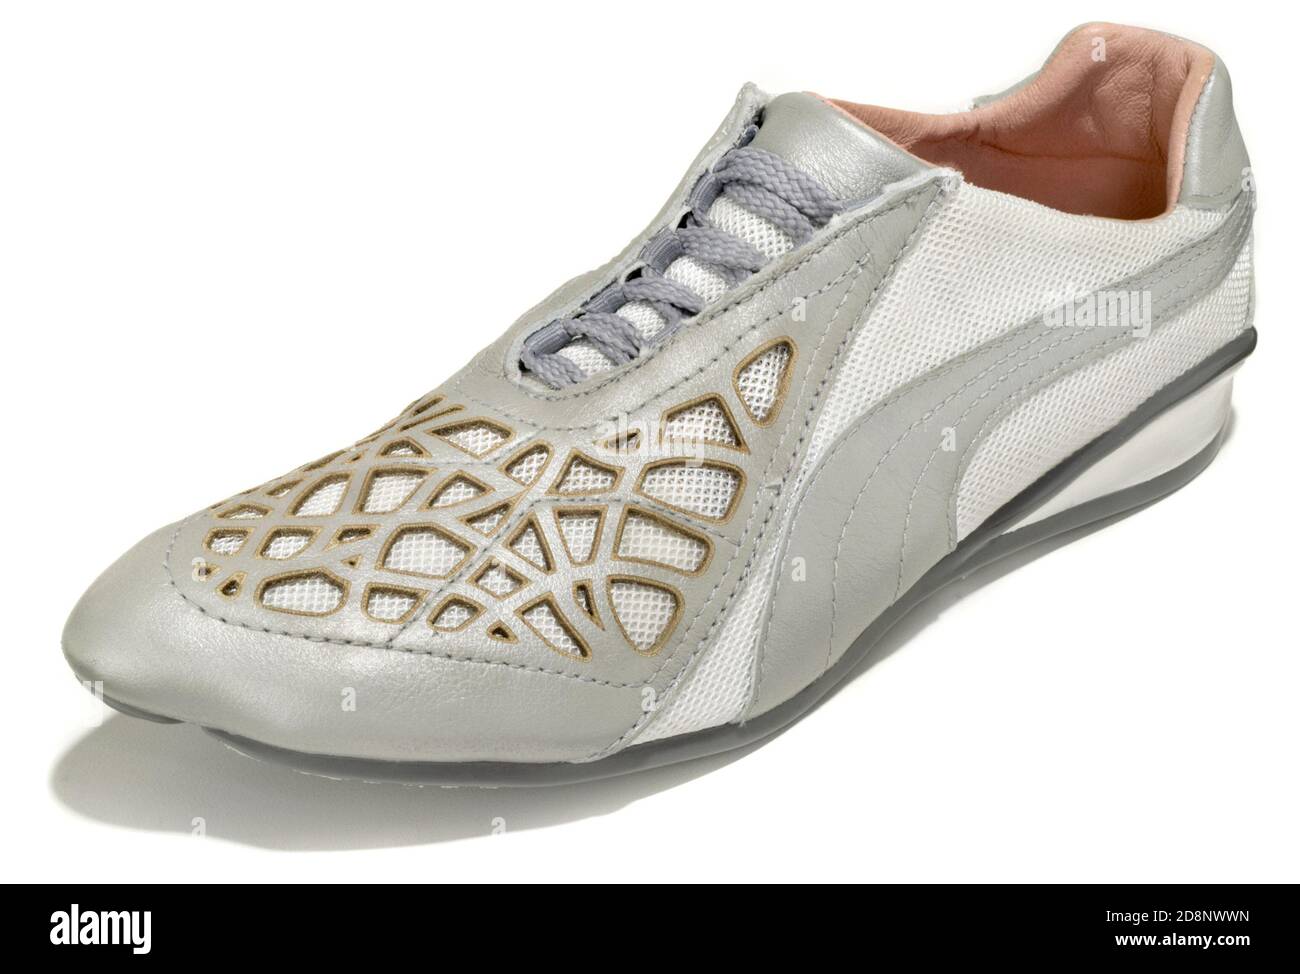 Unas zapatillas de running blancas y plateadas con detalles de color dorado Diseñado por Puma en colaboración con Alexander McQueen fotografiado en un fondo blanco Fotografía de stock Alamy